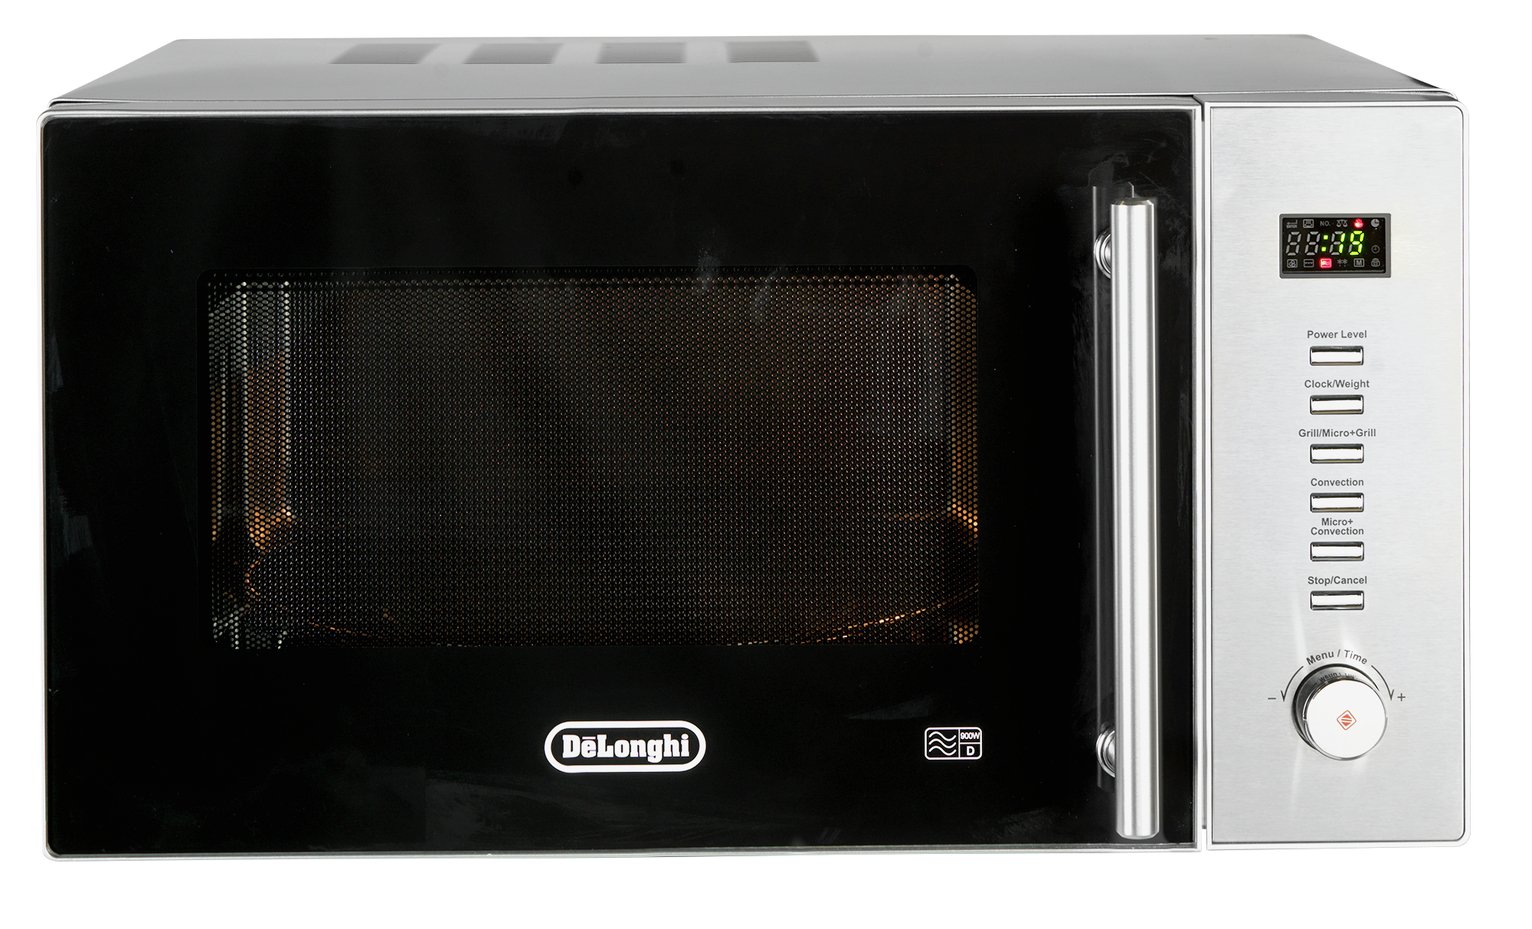 De'Longhi D90N30 900W Combination Microwave - S.Steel